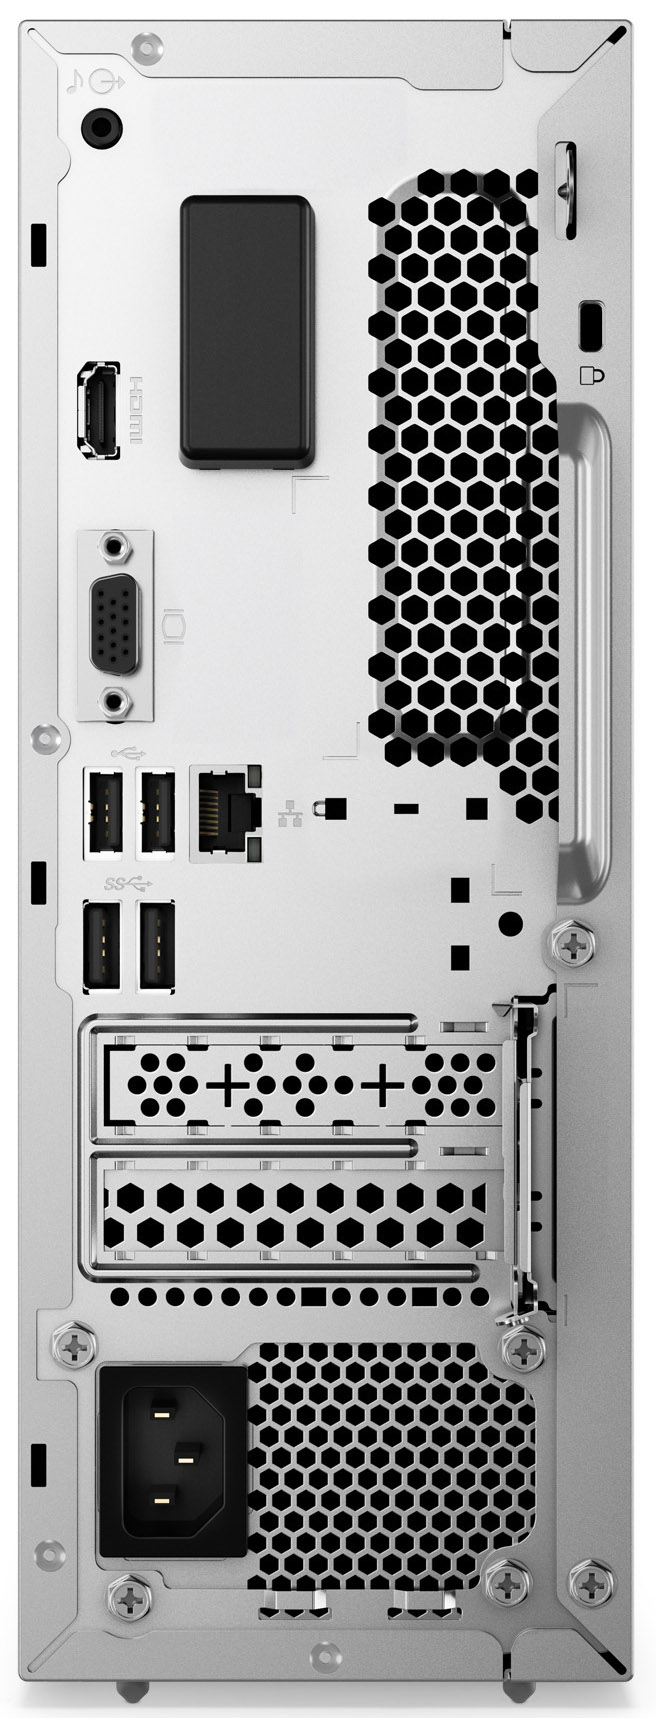 Computadores em formato de torre com possibilidade de expansão de  características